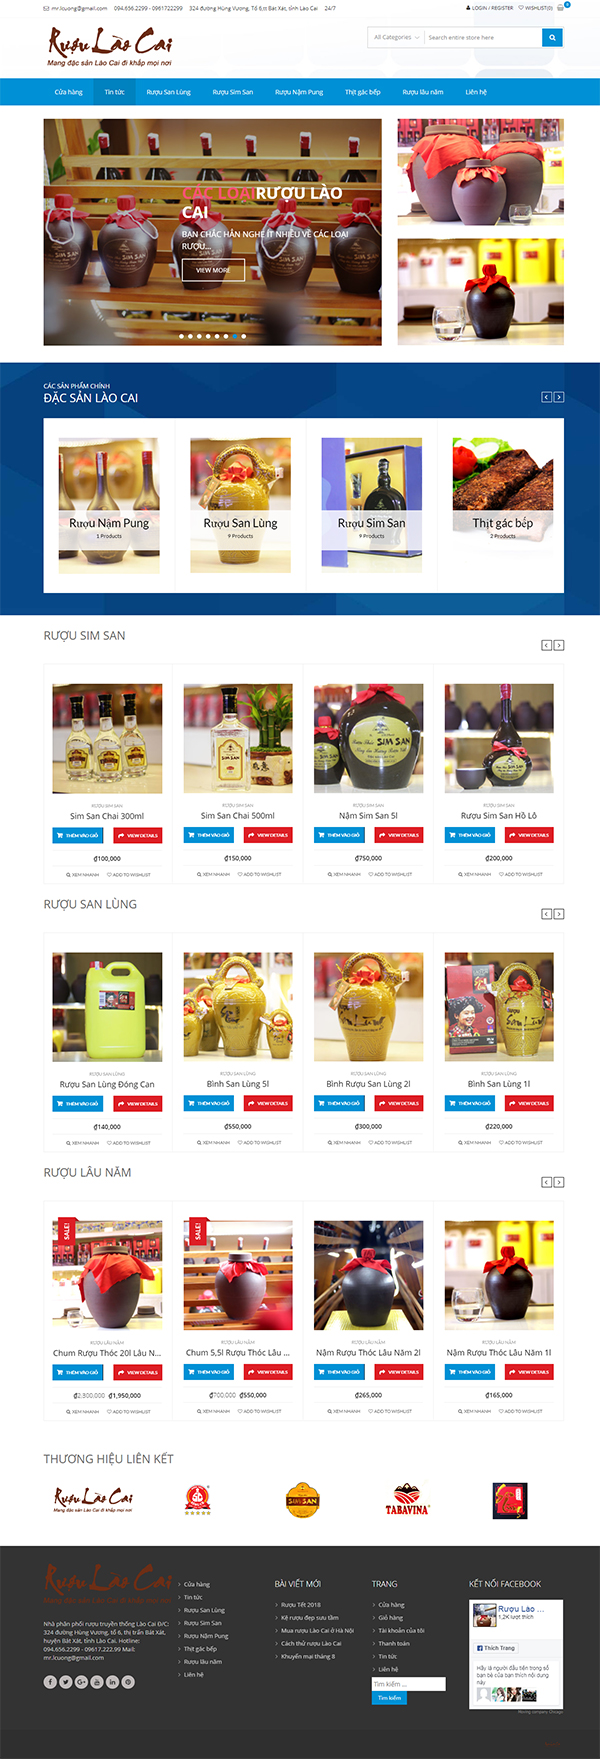 Thiết kế Mẫu Website Rượu RUOU05